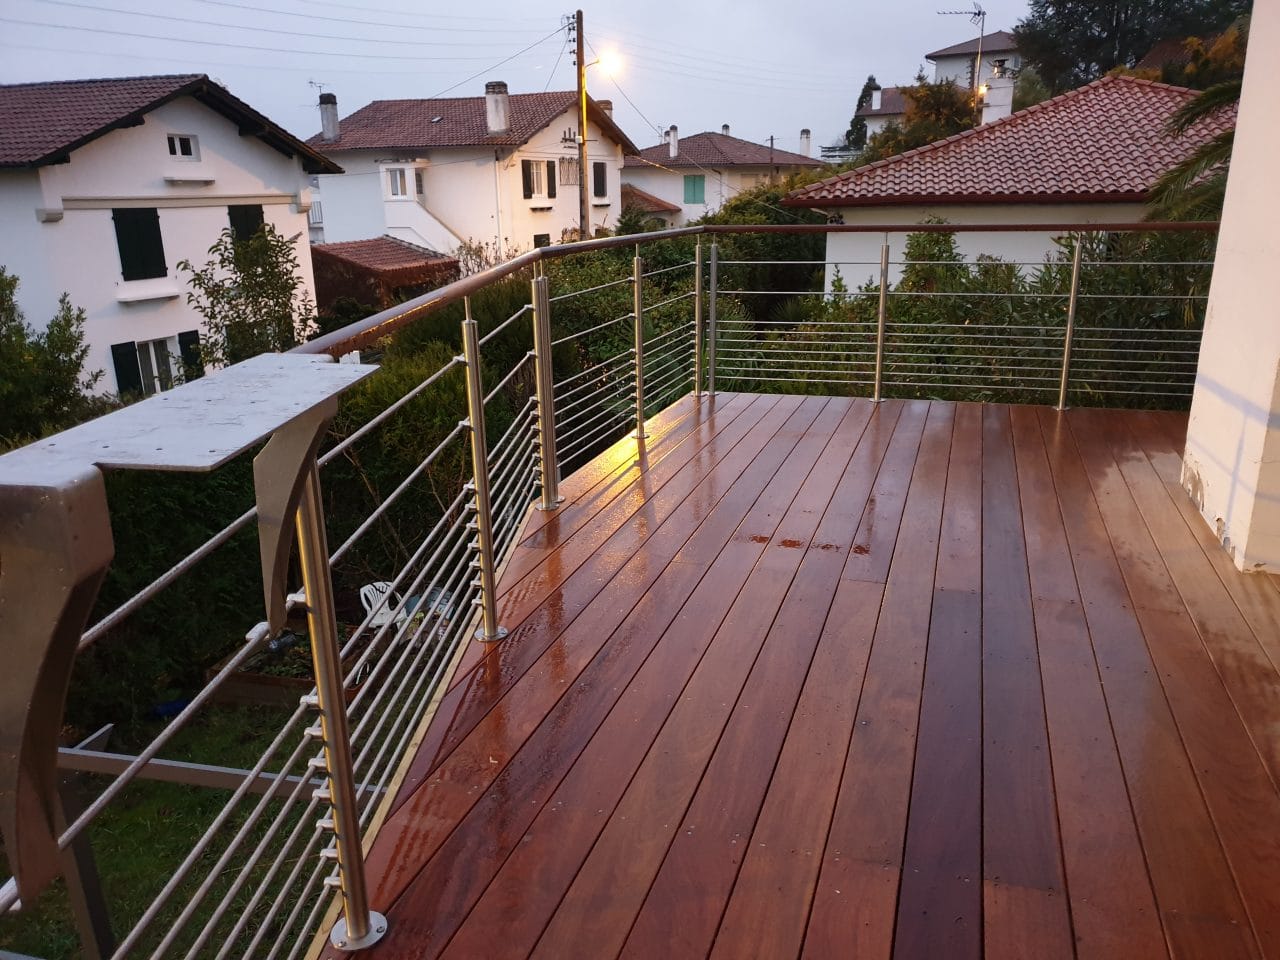 création d'une terrasse sur un balcon à Saint-Jean-de-Luz - terrasse en bois